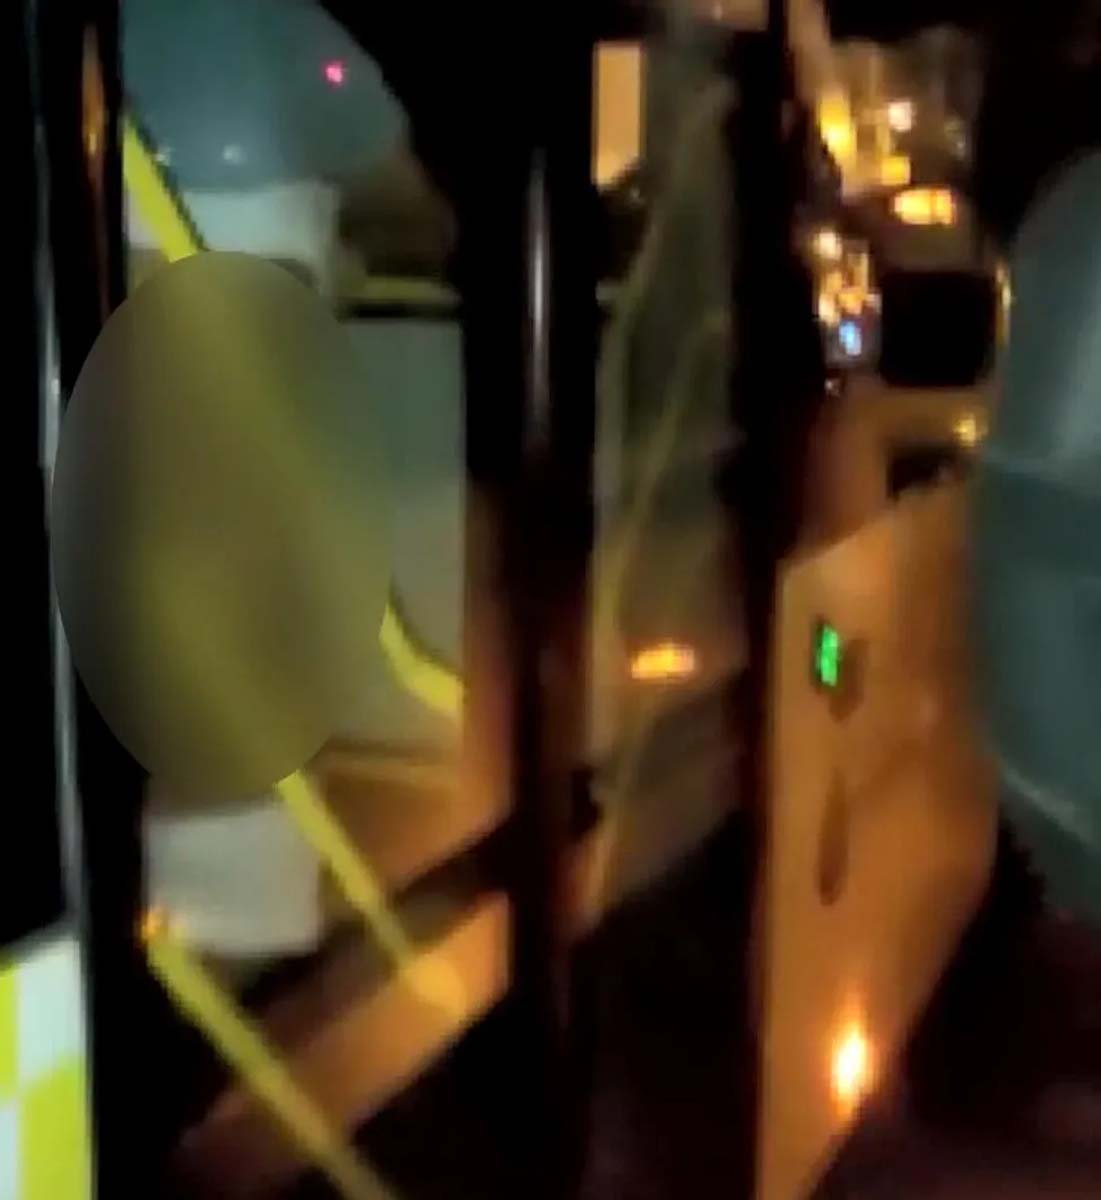 İstanbul Şişli'de mide bulandıran olay! İETT şoförü, eski sevgilisiyle otobüste cinsel ilişkiye girerken yakalandı 